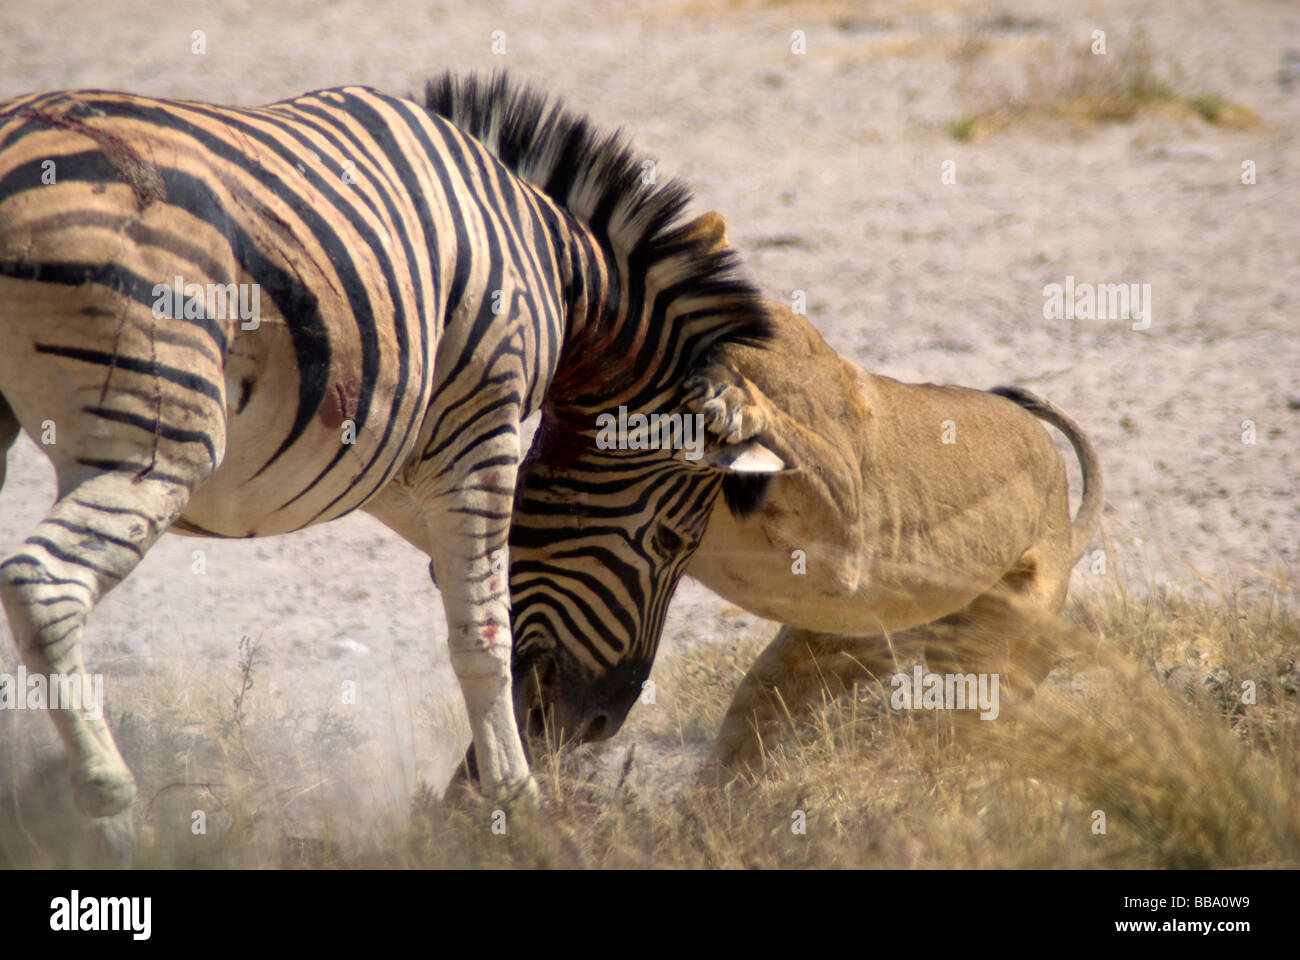 Tuer un zèbre à Lionness Salvadora waterhole, Etosha National Park, Namibie Banque D'Images